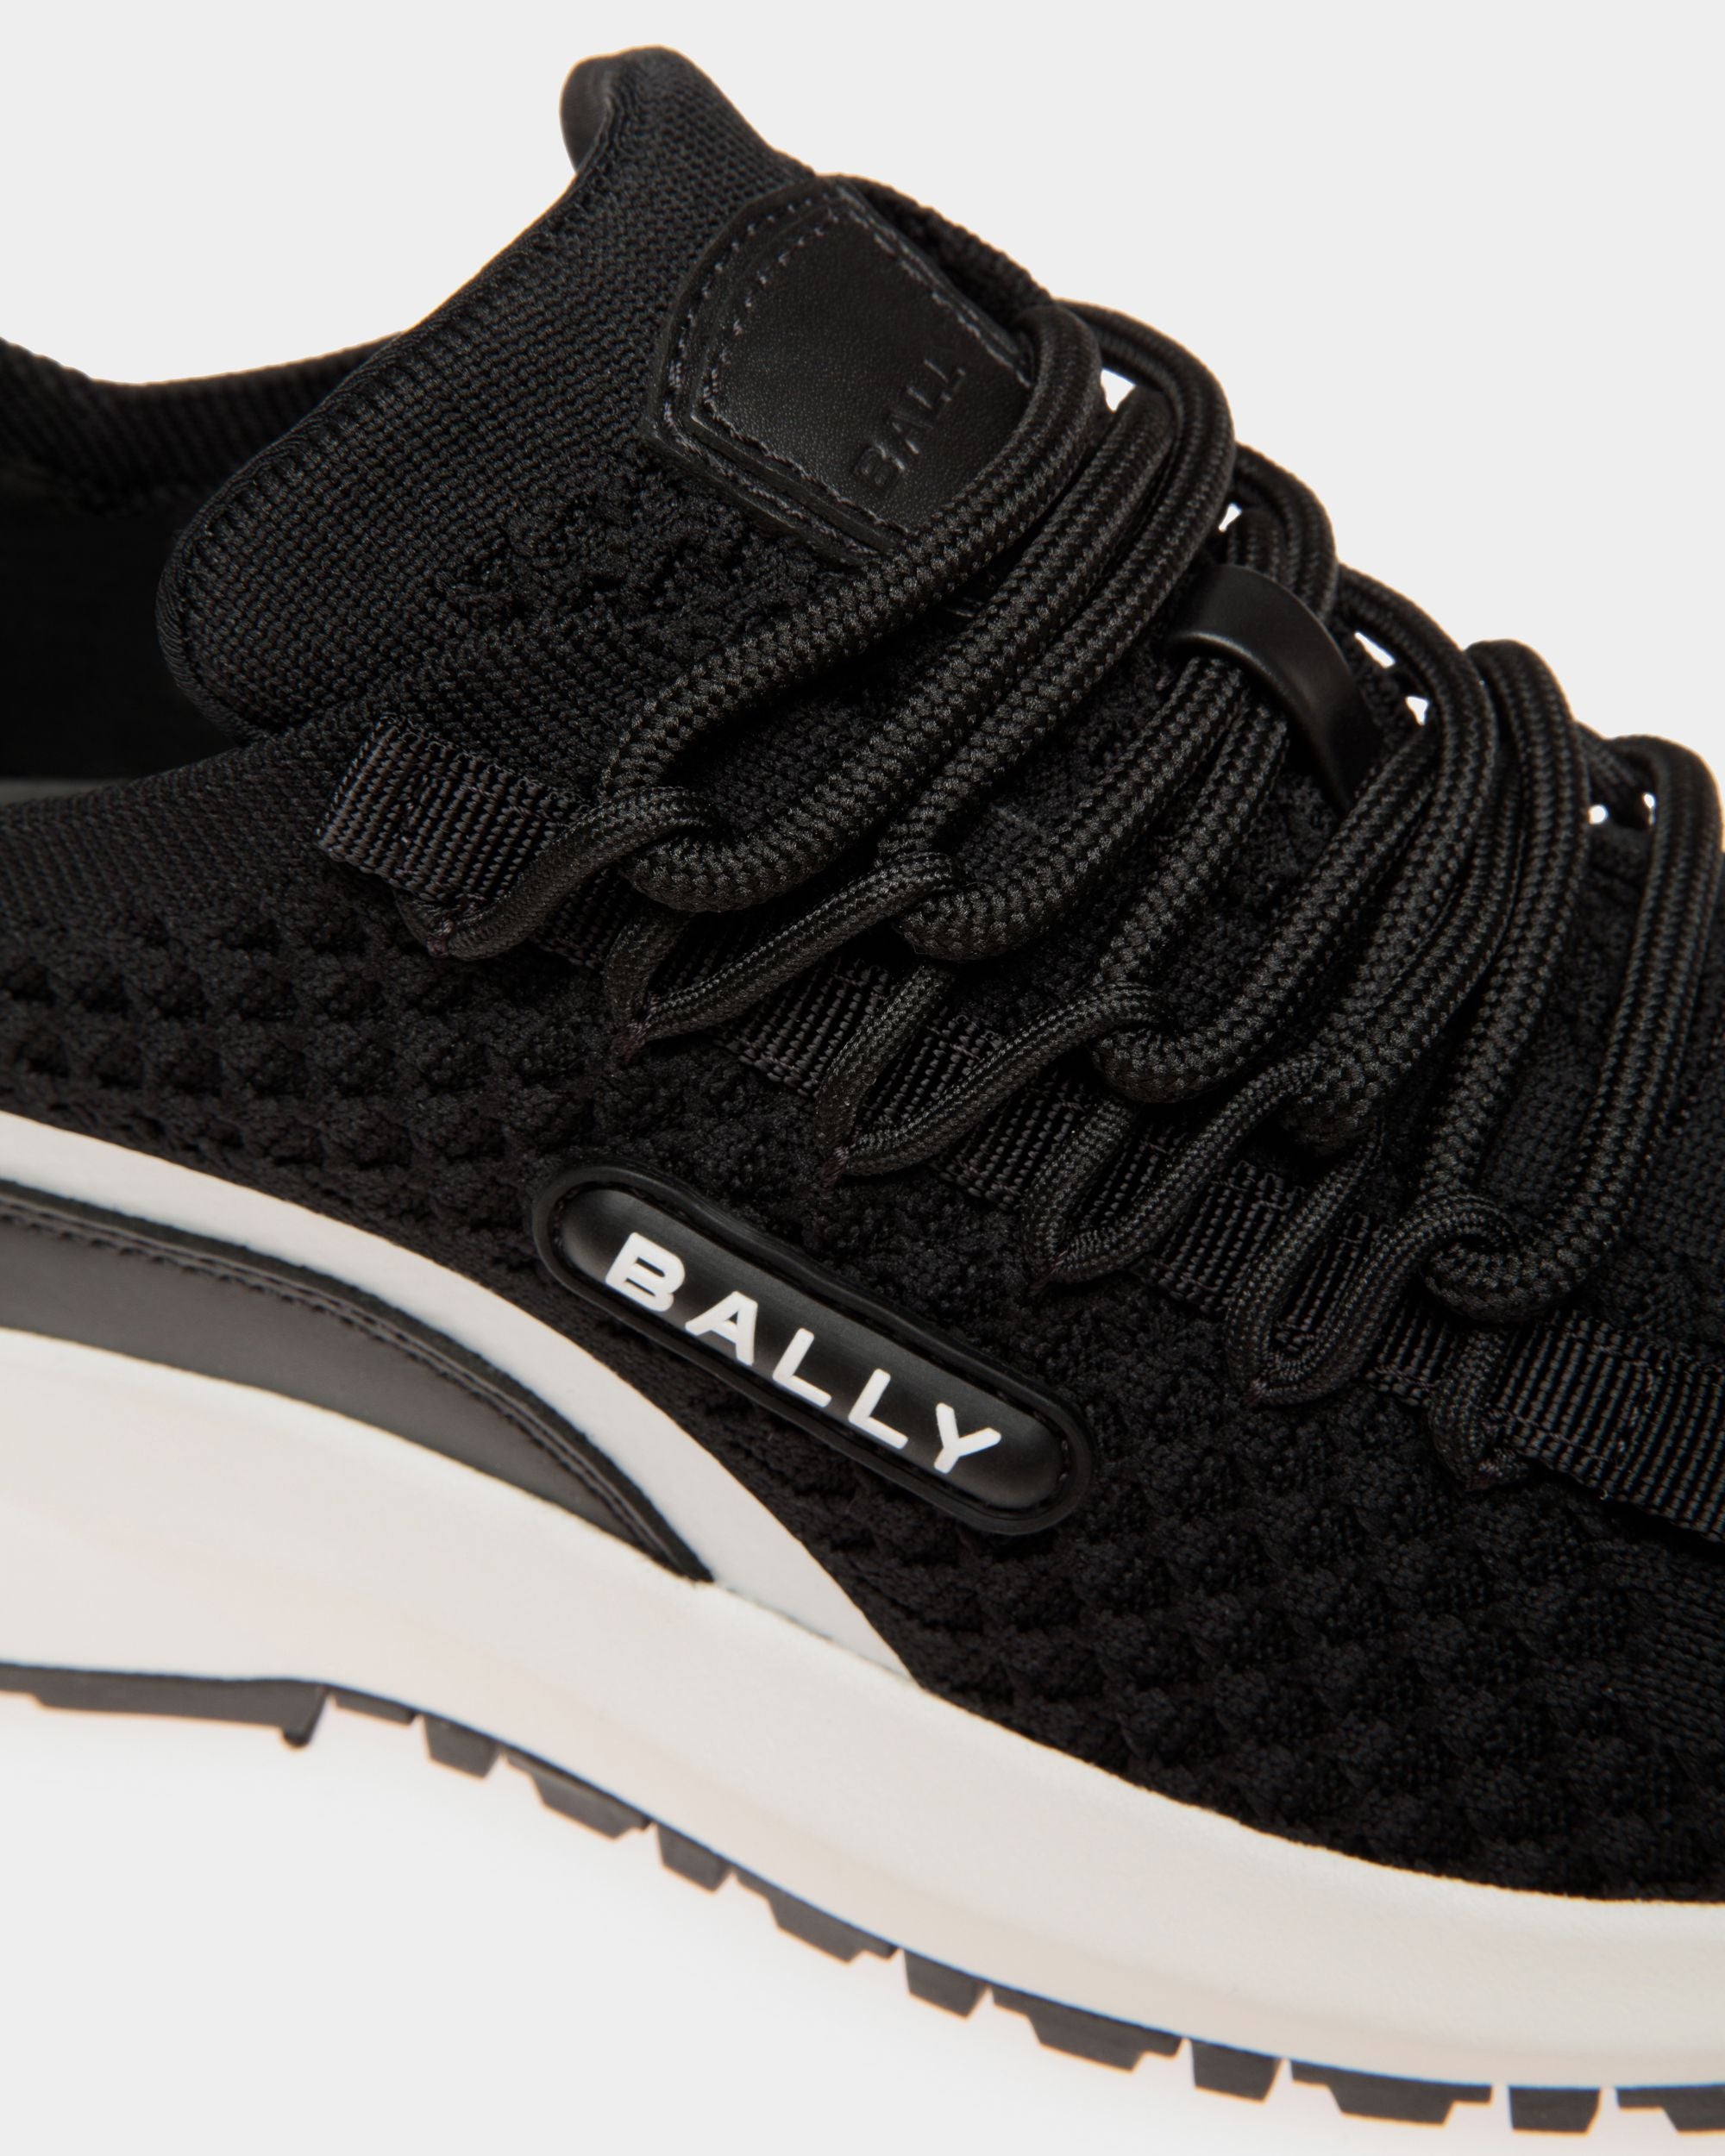 Outline | Women's Sneaker in Black Knit | Bally | Still Life Detail